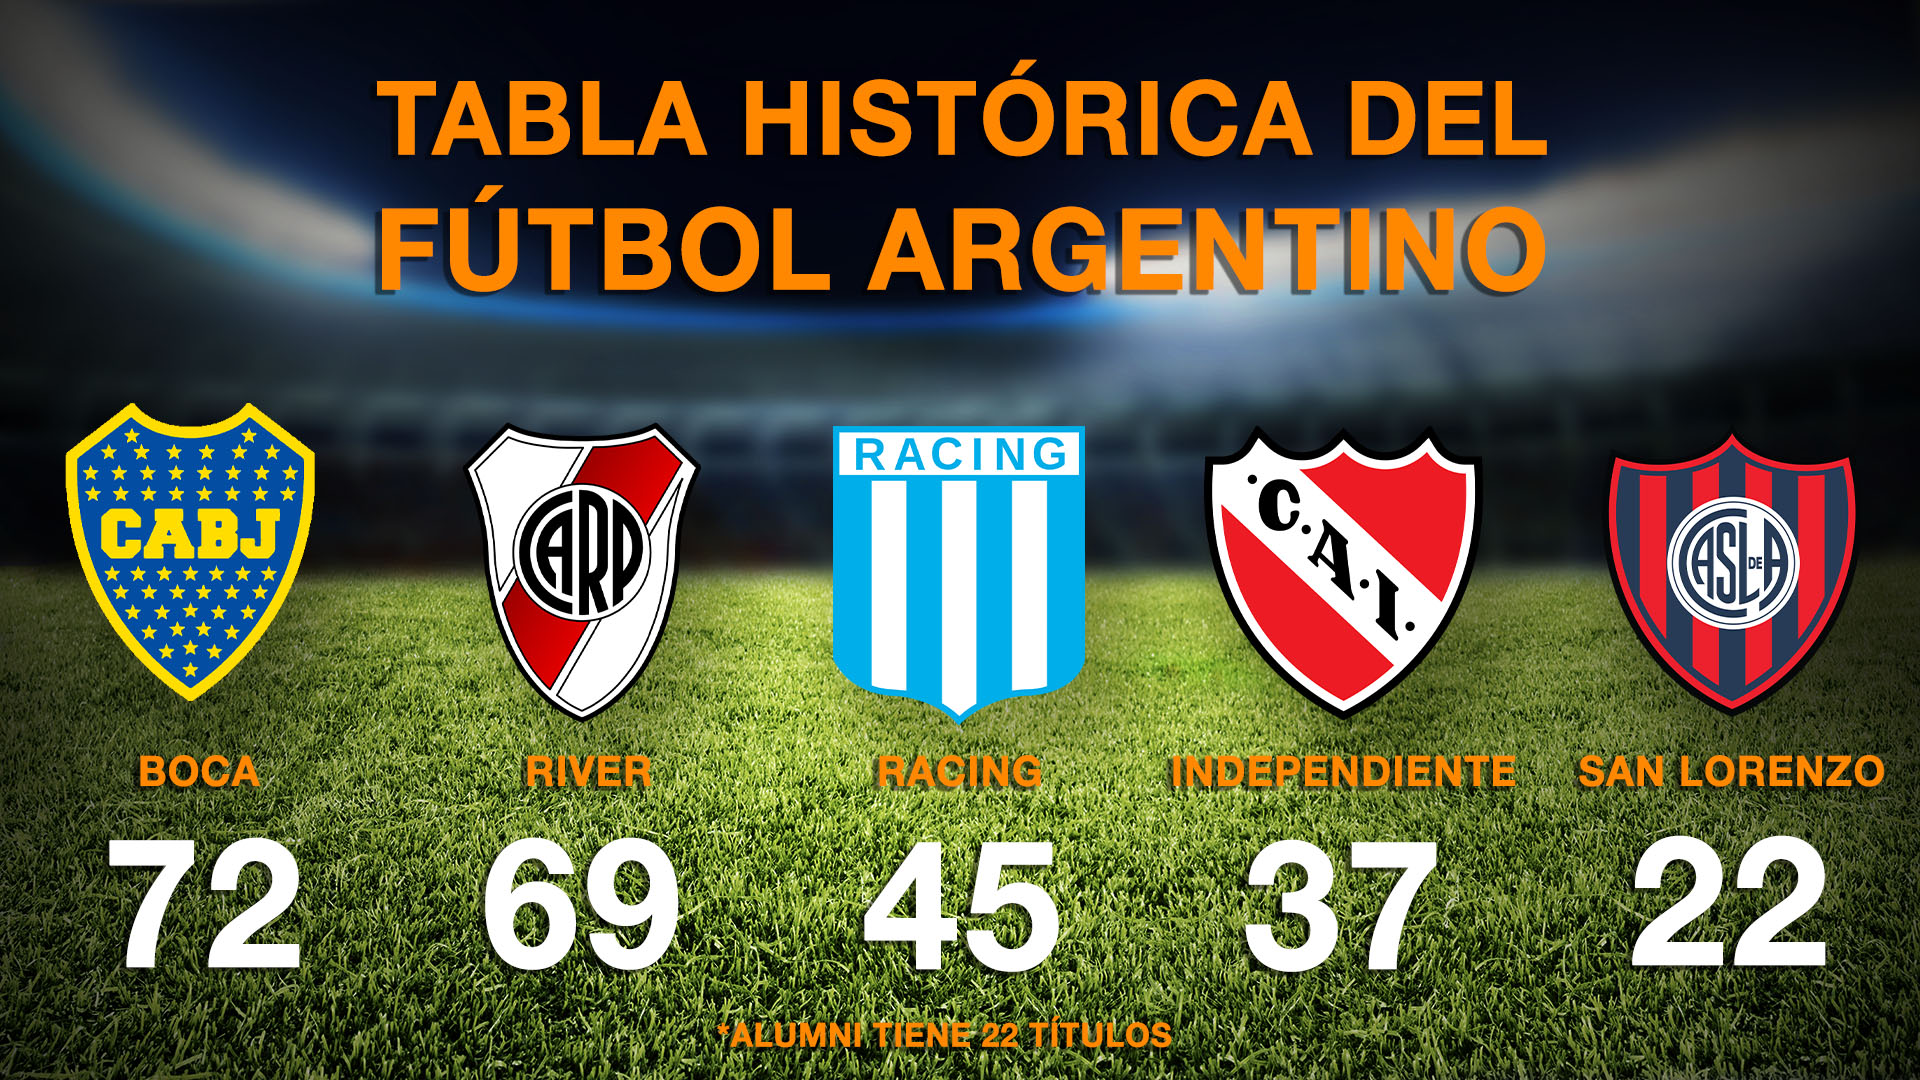 Los cinco clubes más ganadores de la historia del fútbol argentino (Fuente: rhdelfutbol)